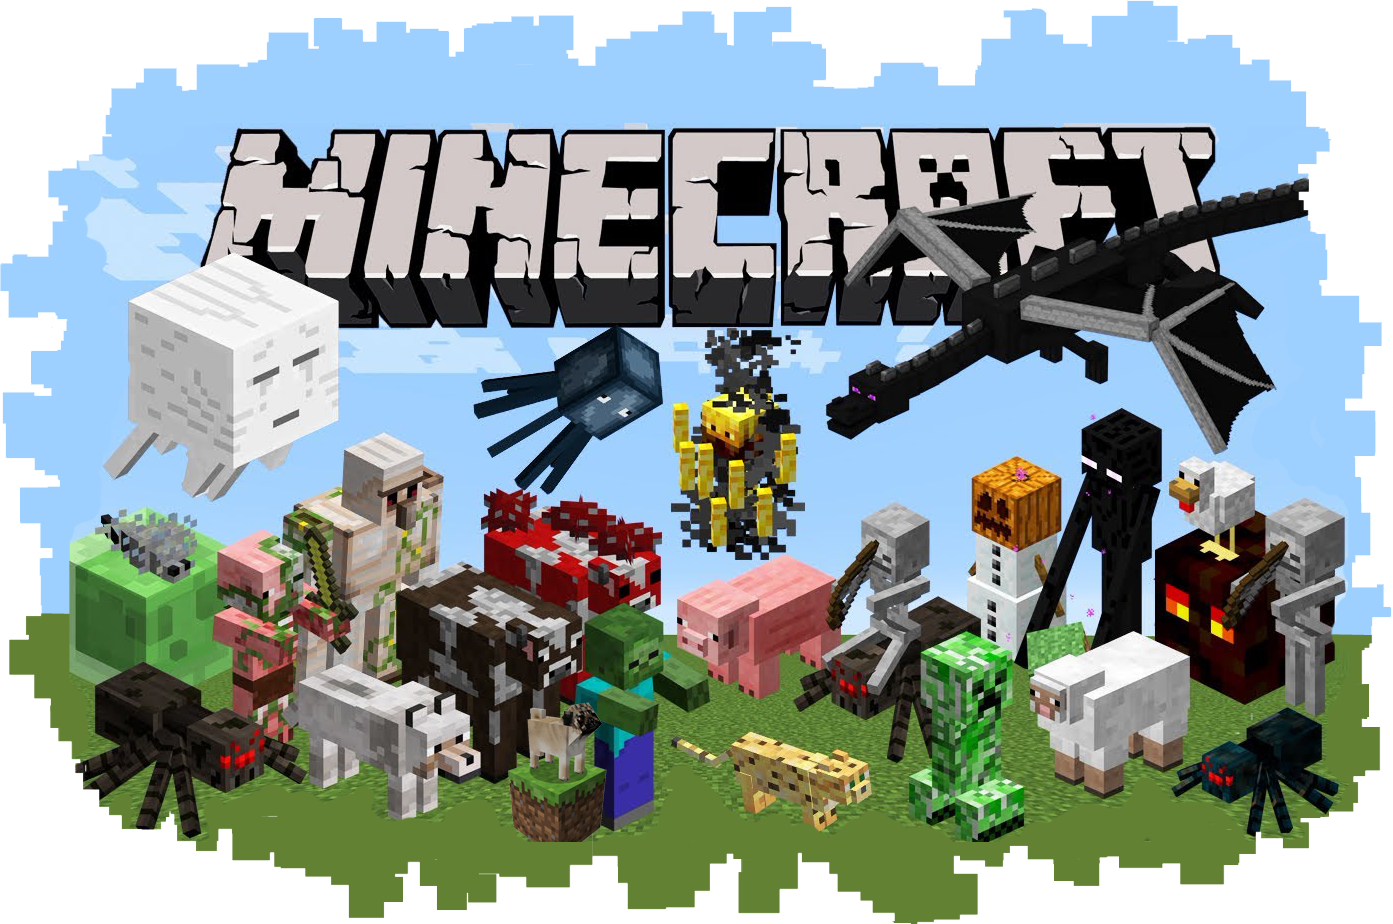 Background Minecraft PNG com fundo transparente. Baixe grátis!